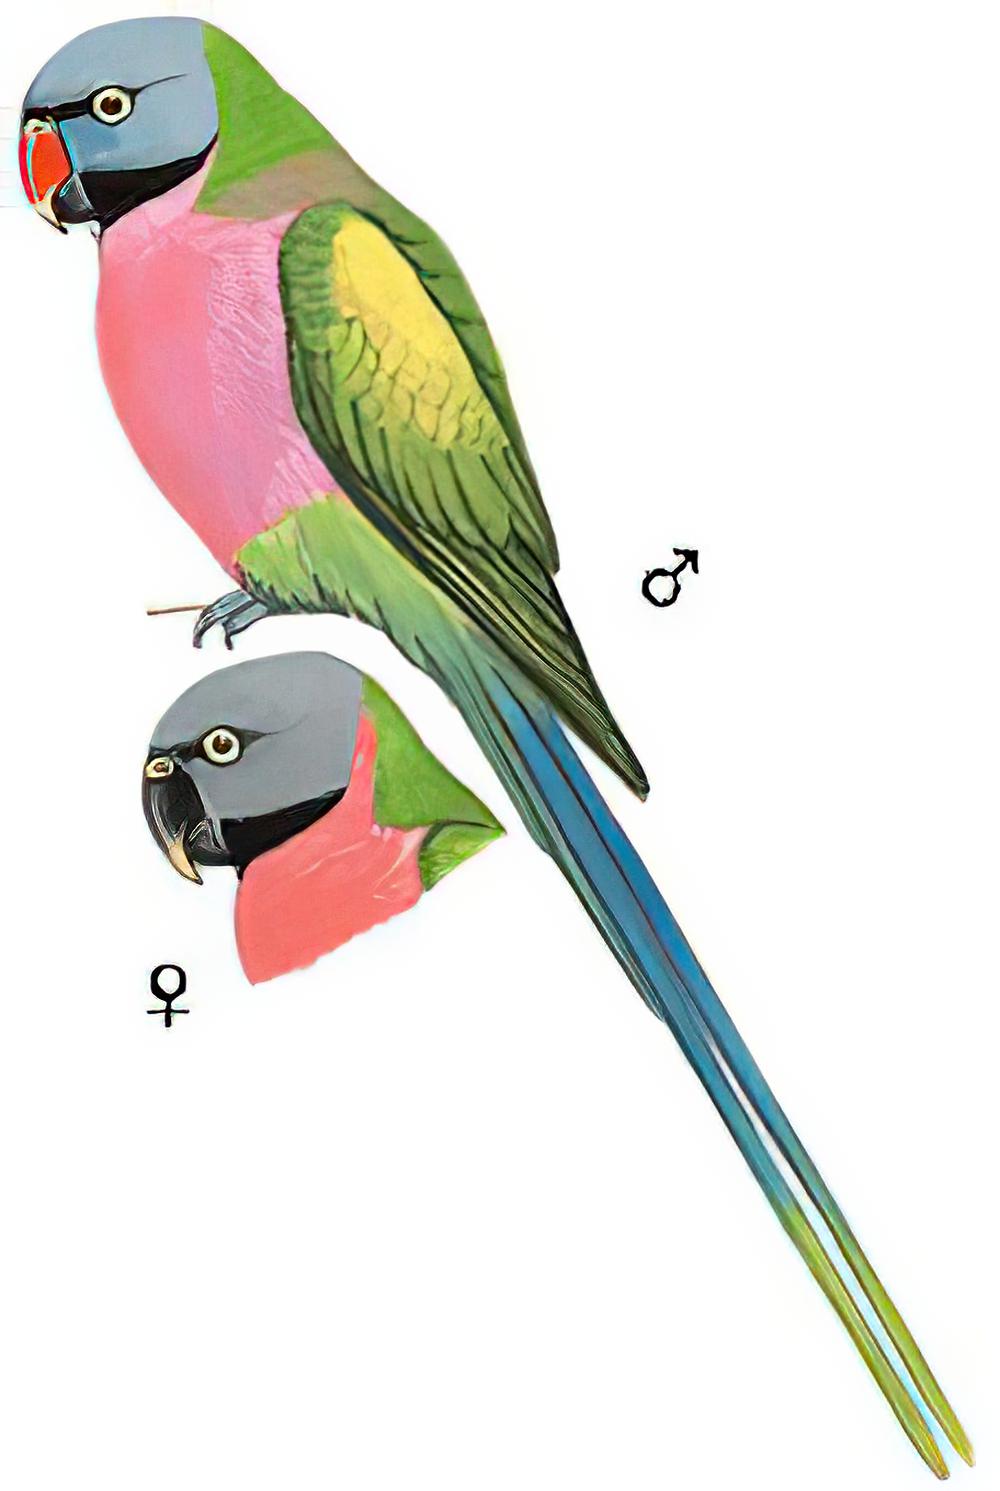 绯胸鹦鹉 / Red-breasted Parakeet / Psittacula alexandri